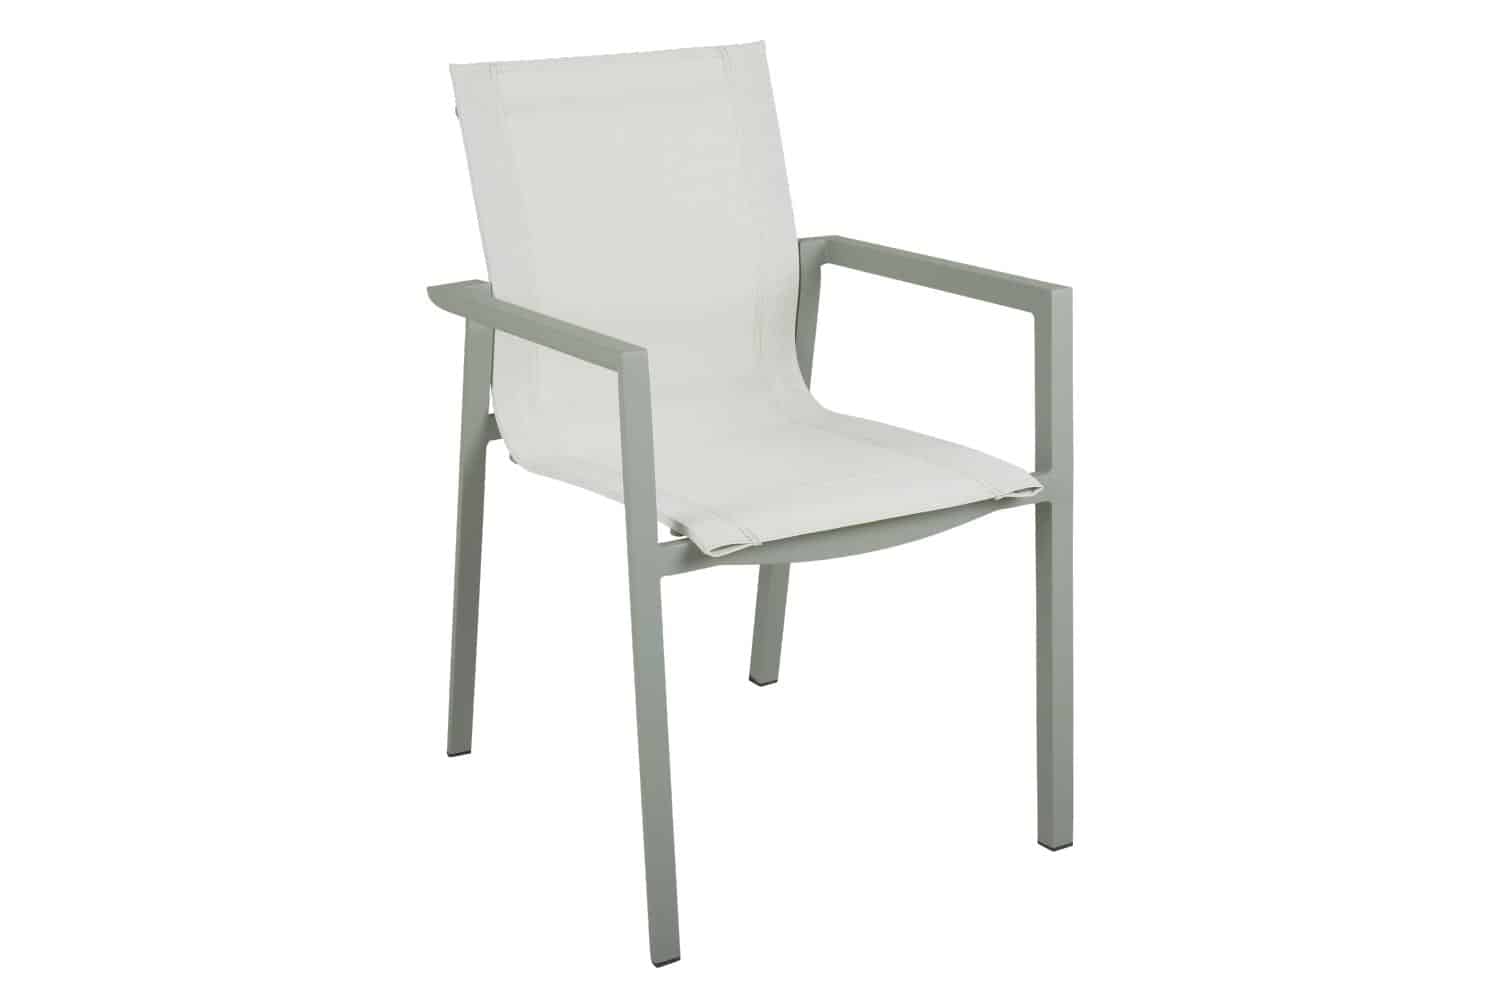 Brafab Delia Karmstol grön/off white är en stapelbar matstol i dammigt matt grön aluminium och off white textilene.